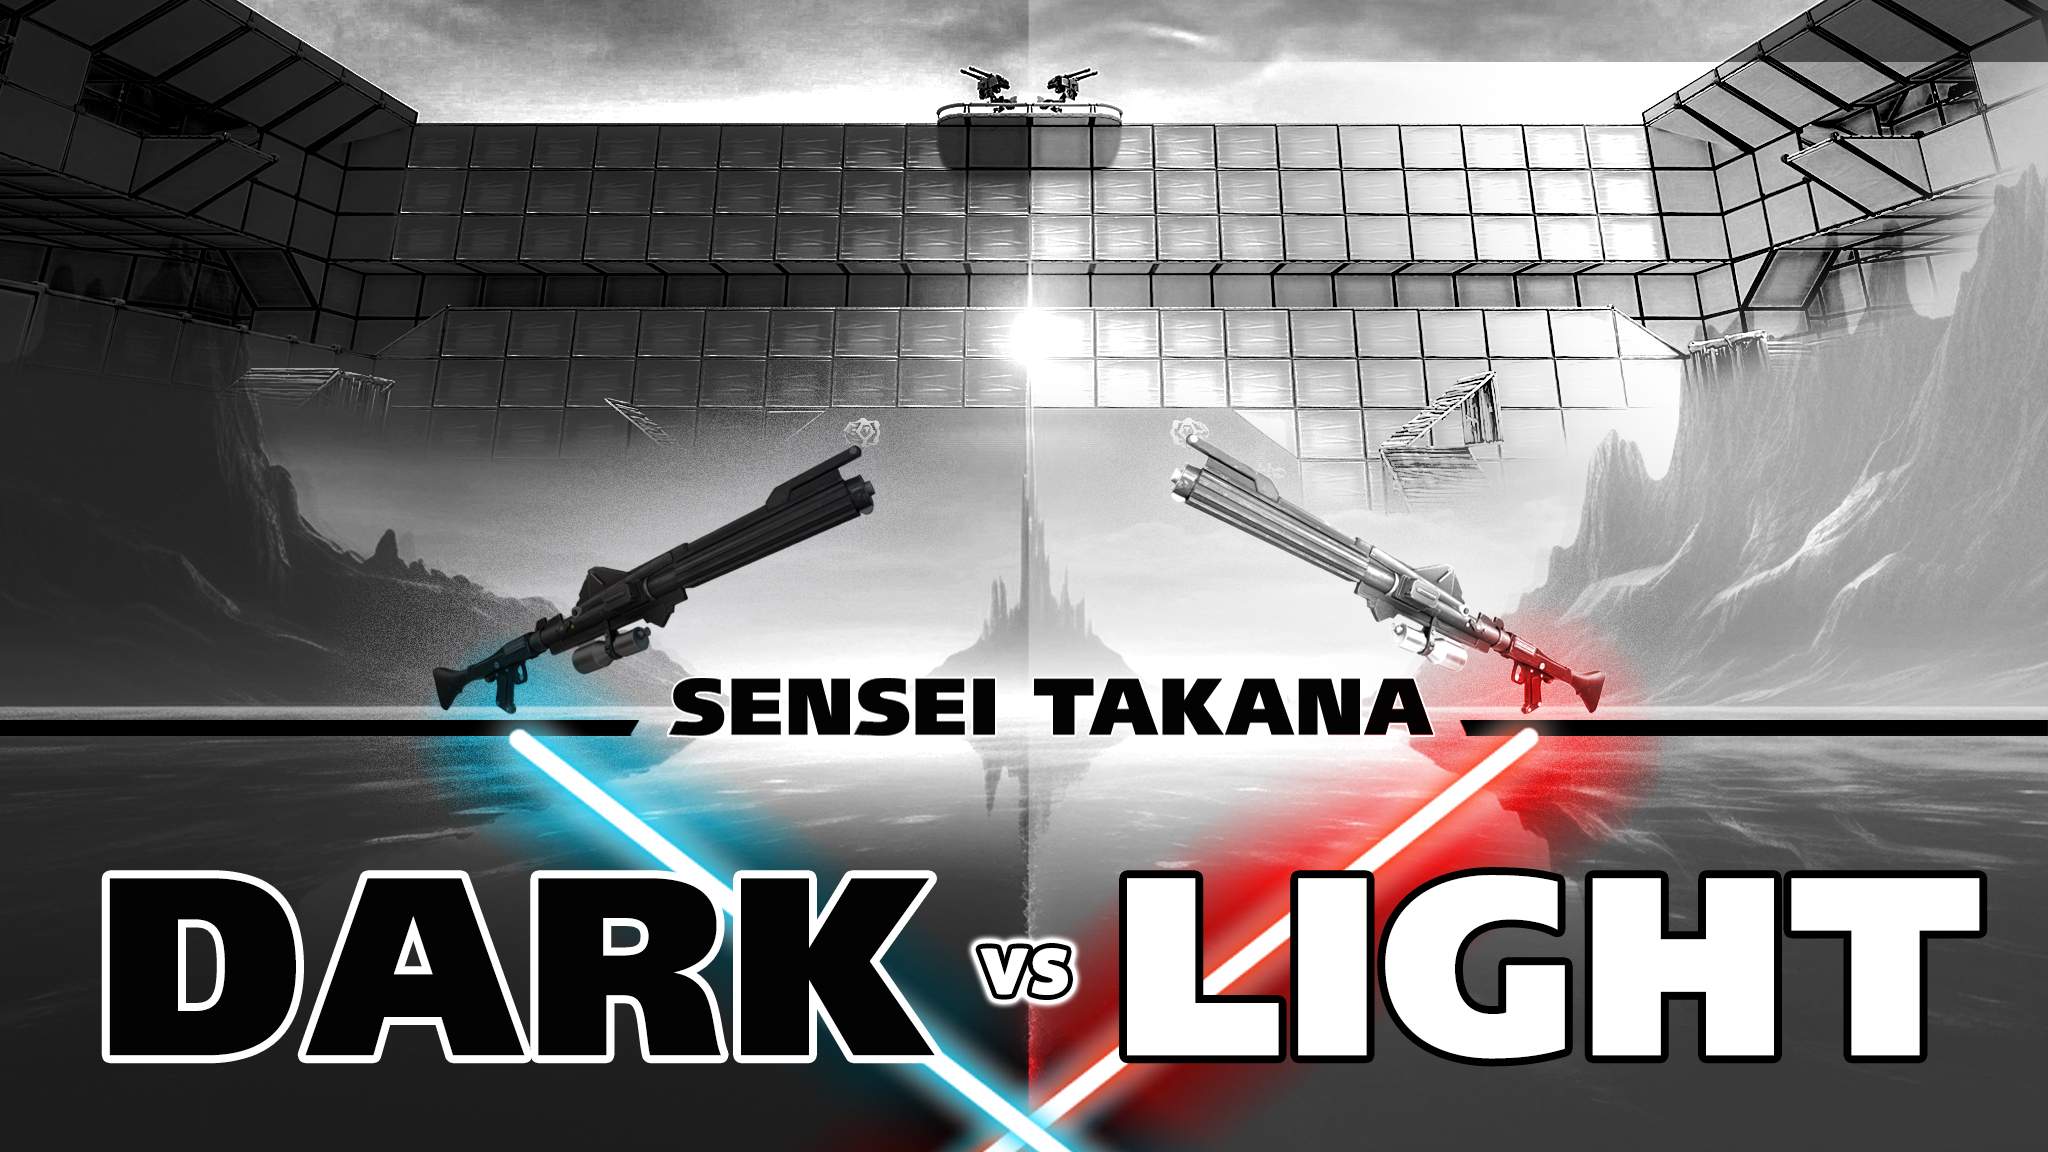 DARK vs LIGHT by SENSEI TAKANA image 3